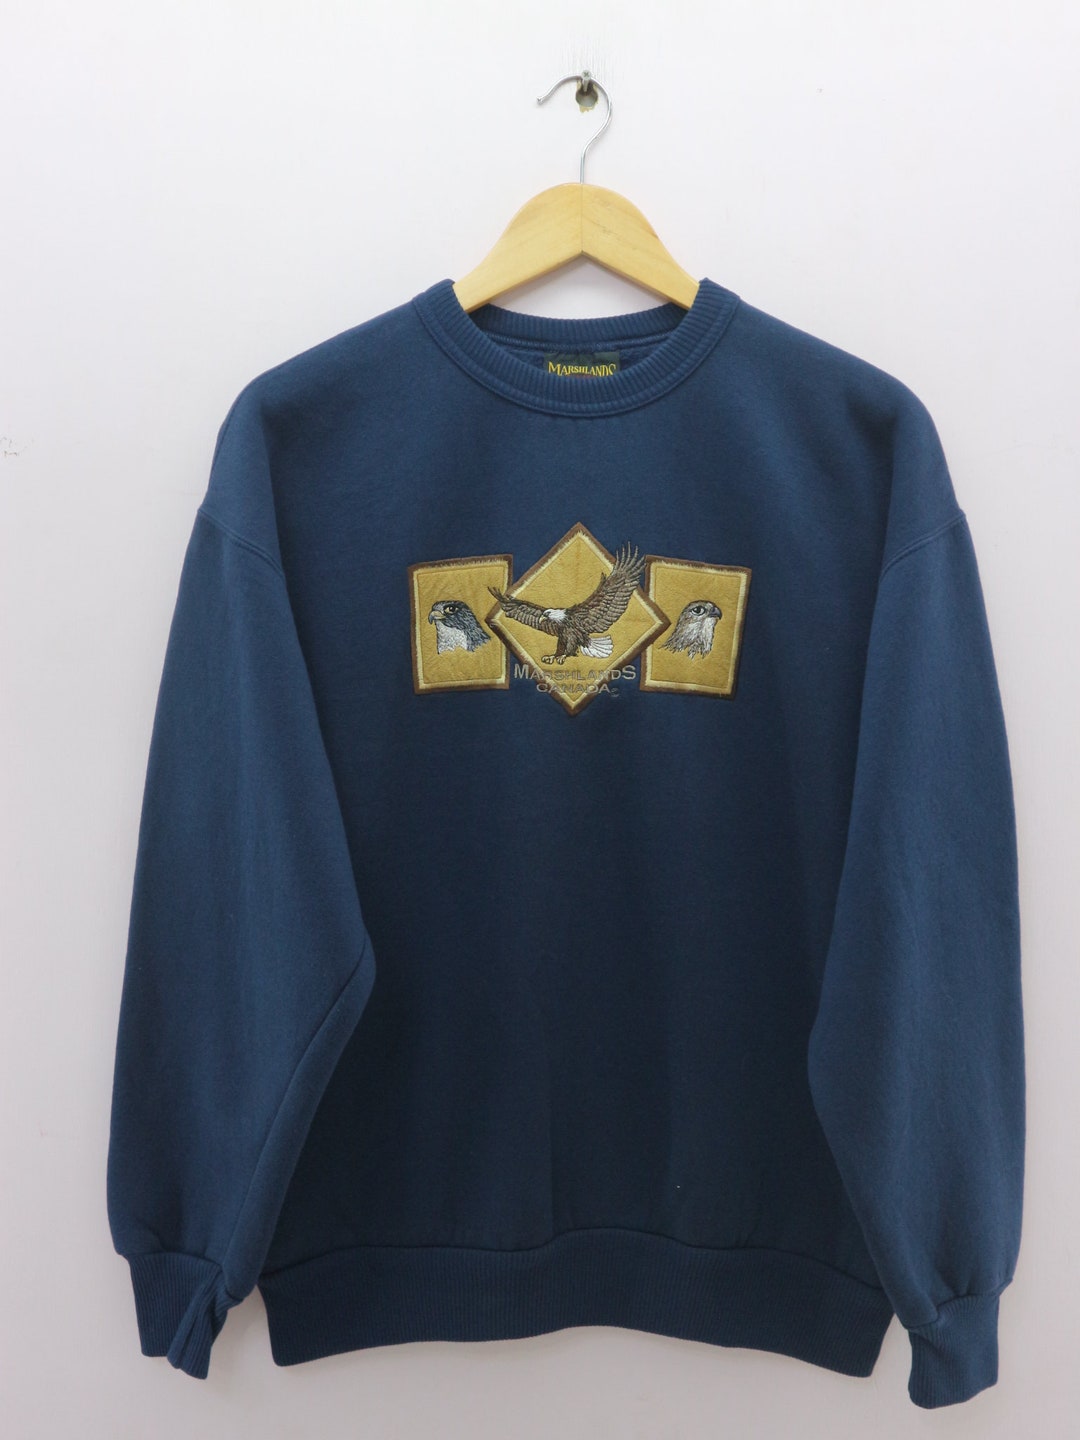 Vintage Marshlands Canada Sweatshirt Embroidery Logo Round - Etsy